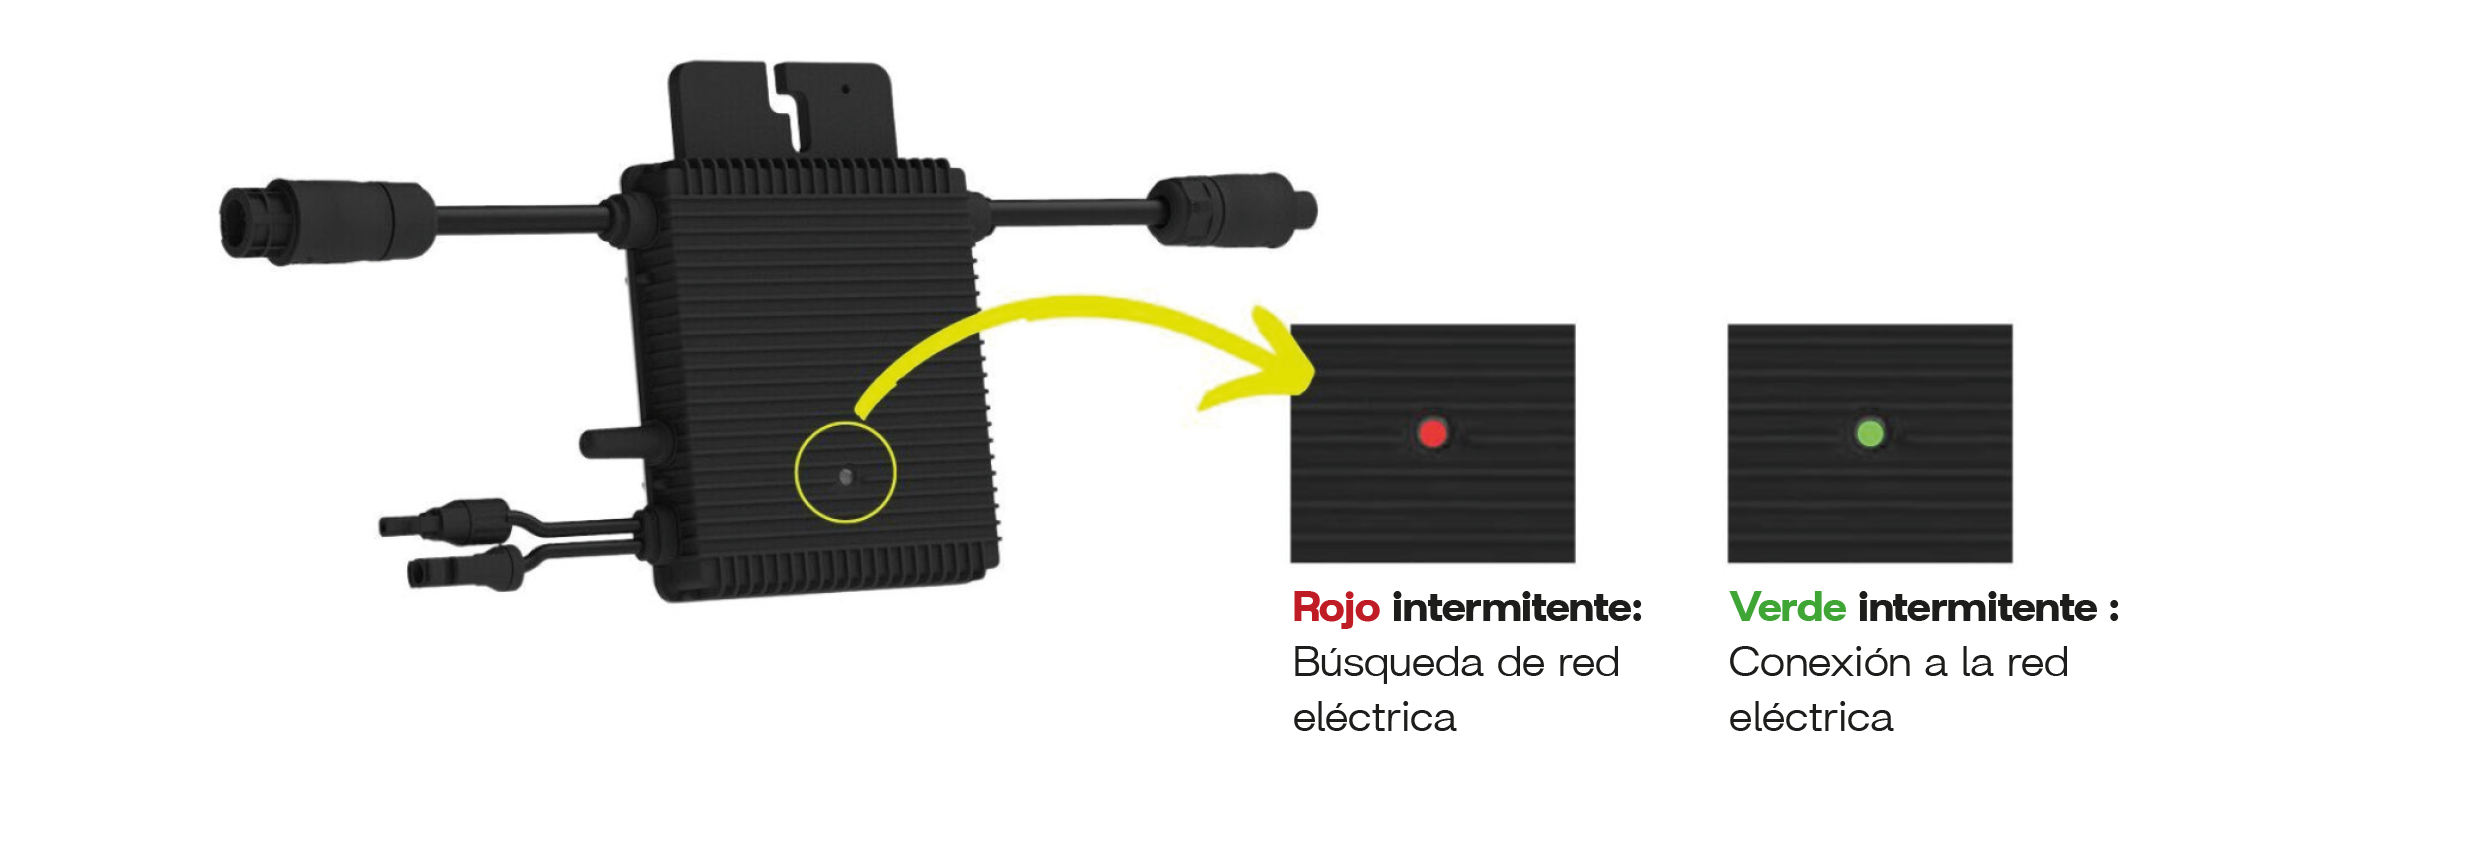 Qué significa una luz roja intermitente?